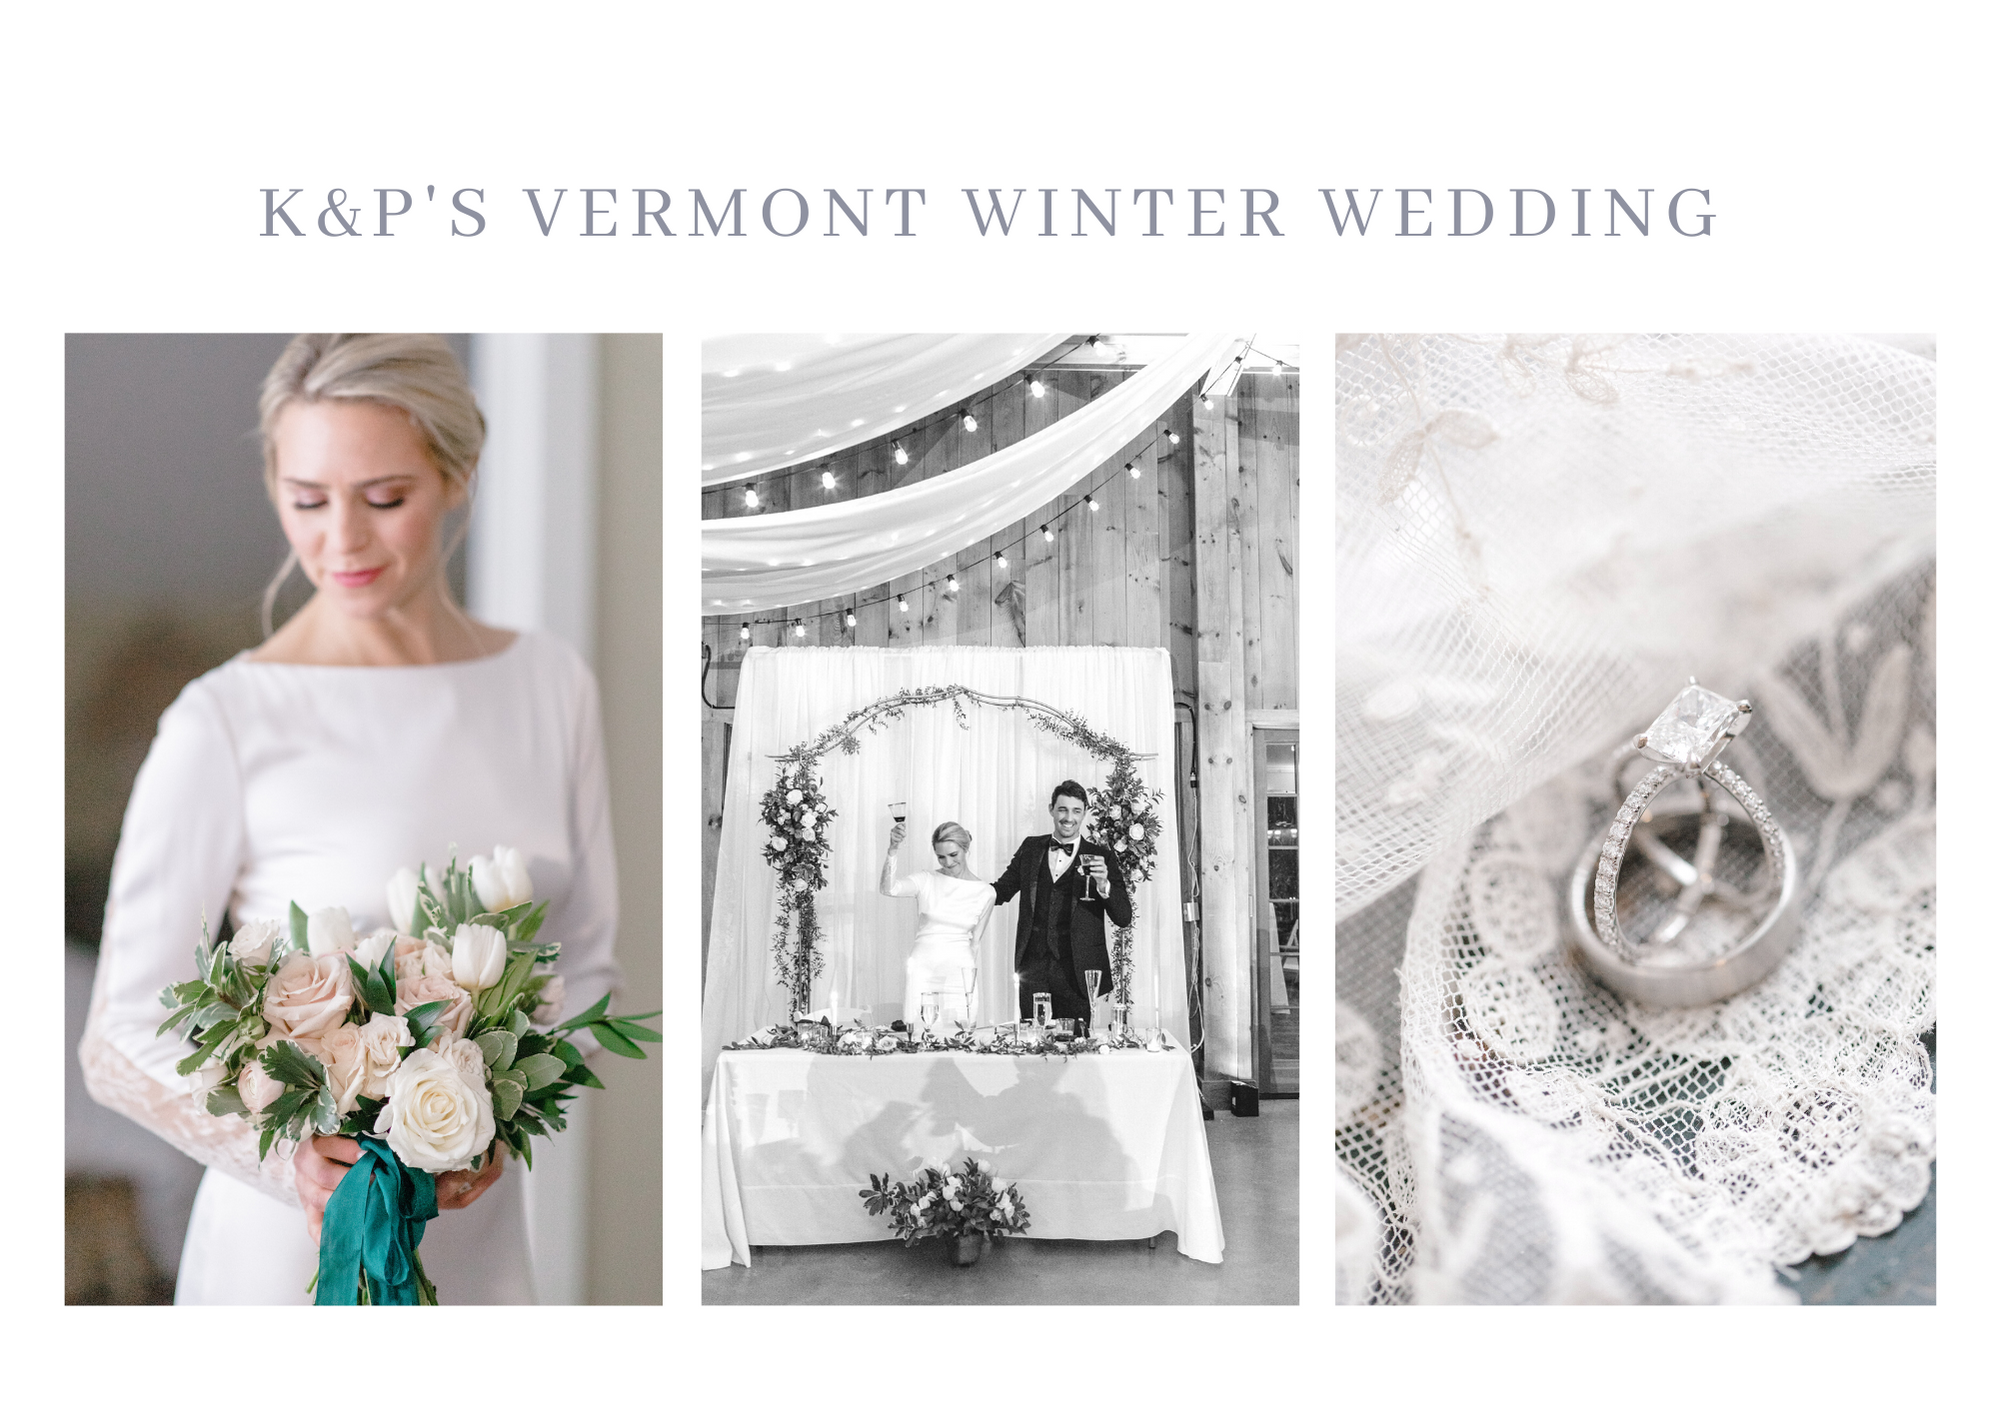 Vermomt winter wedding destination photographer